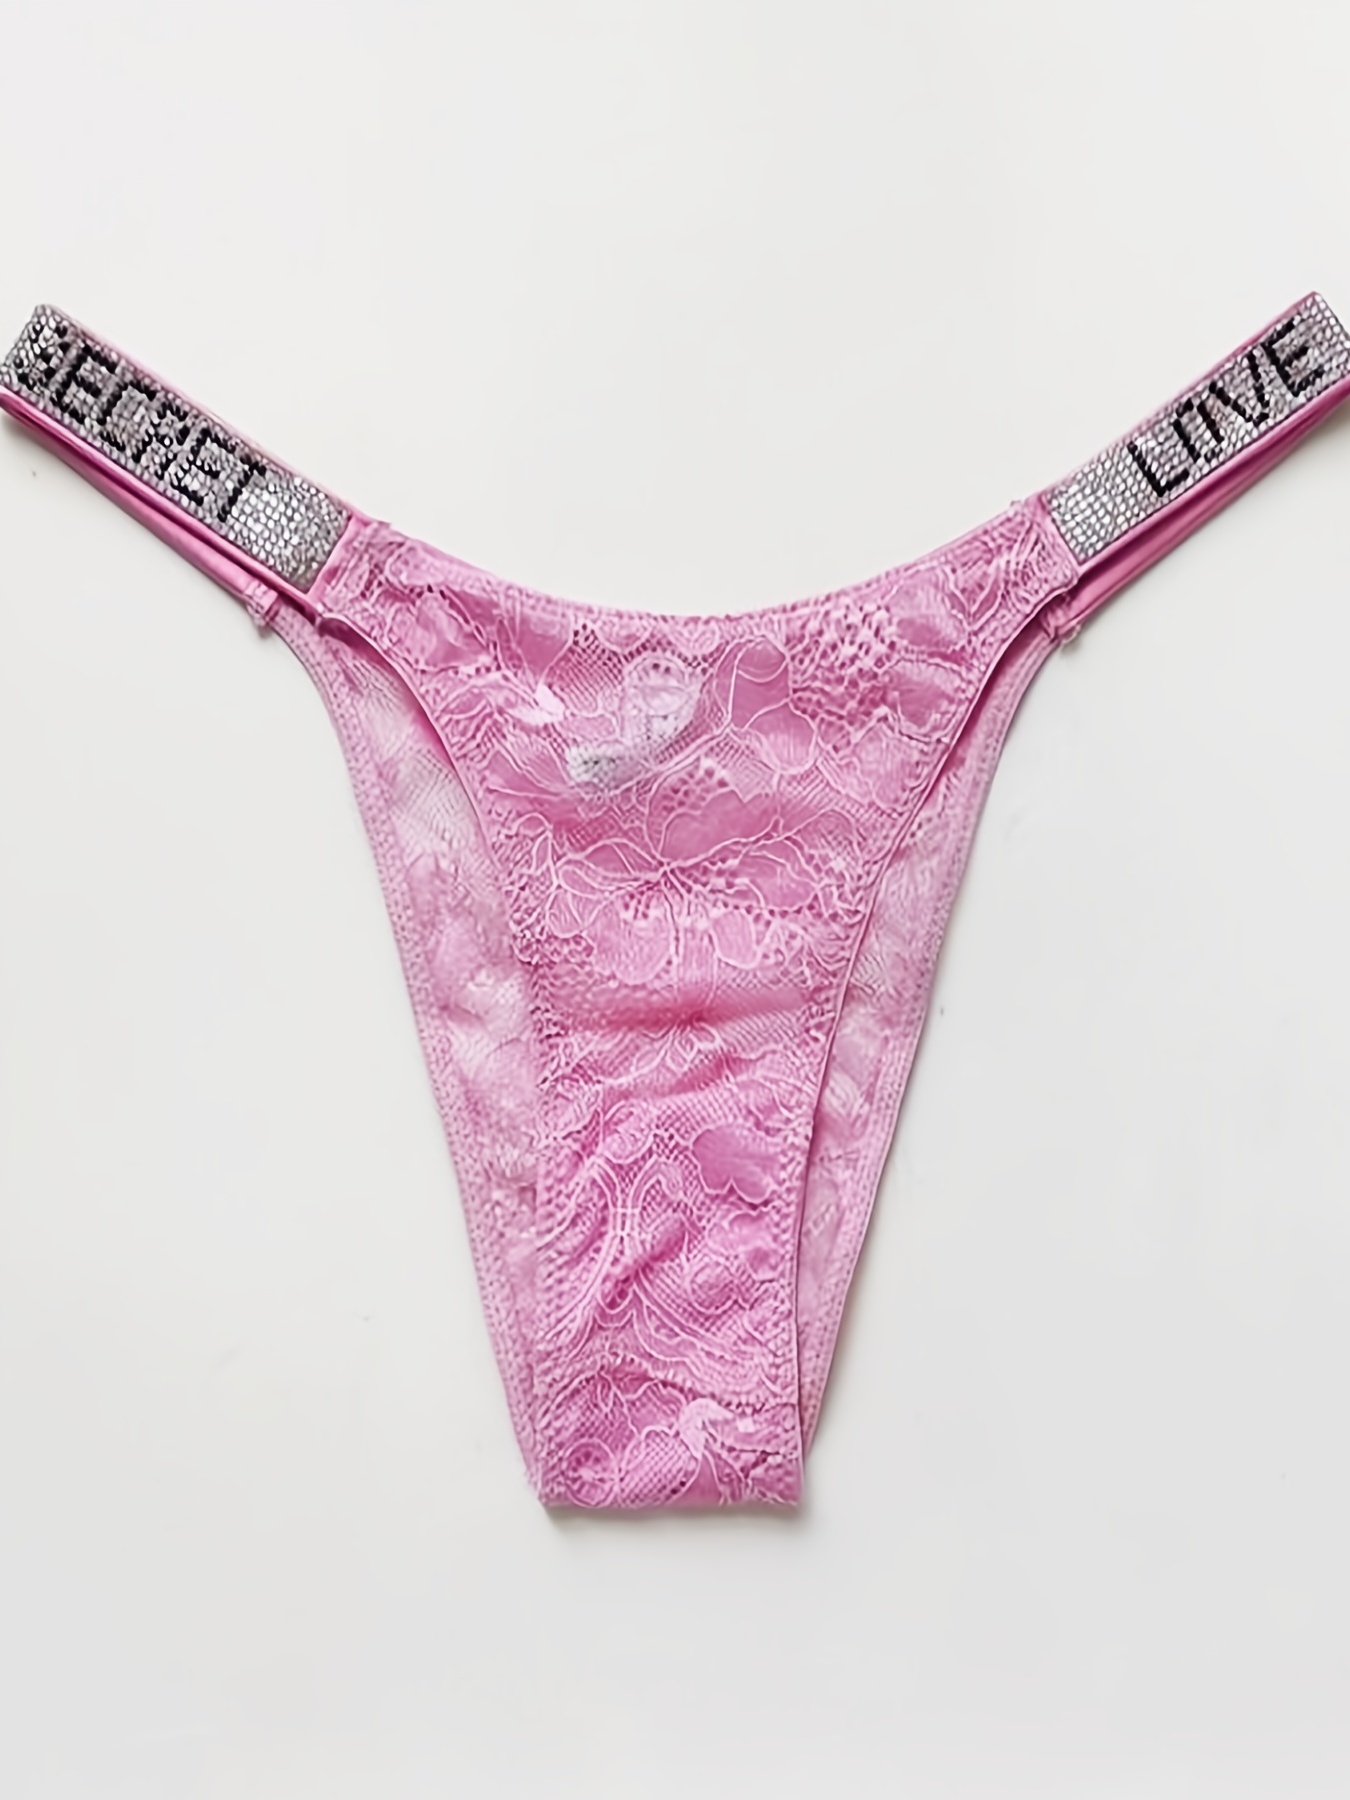 PINK Victoria's Secret, Intimates & Sleepwear, Pink By Victoria Secret  Underwear